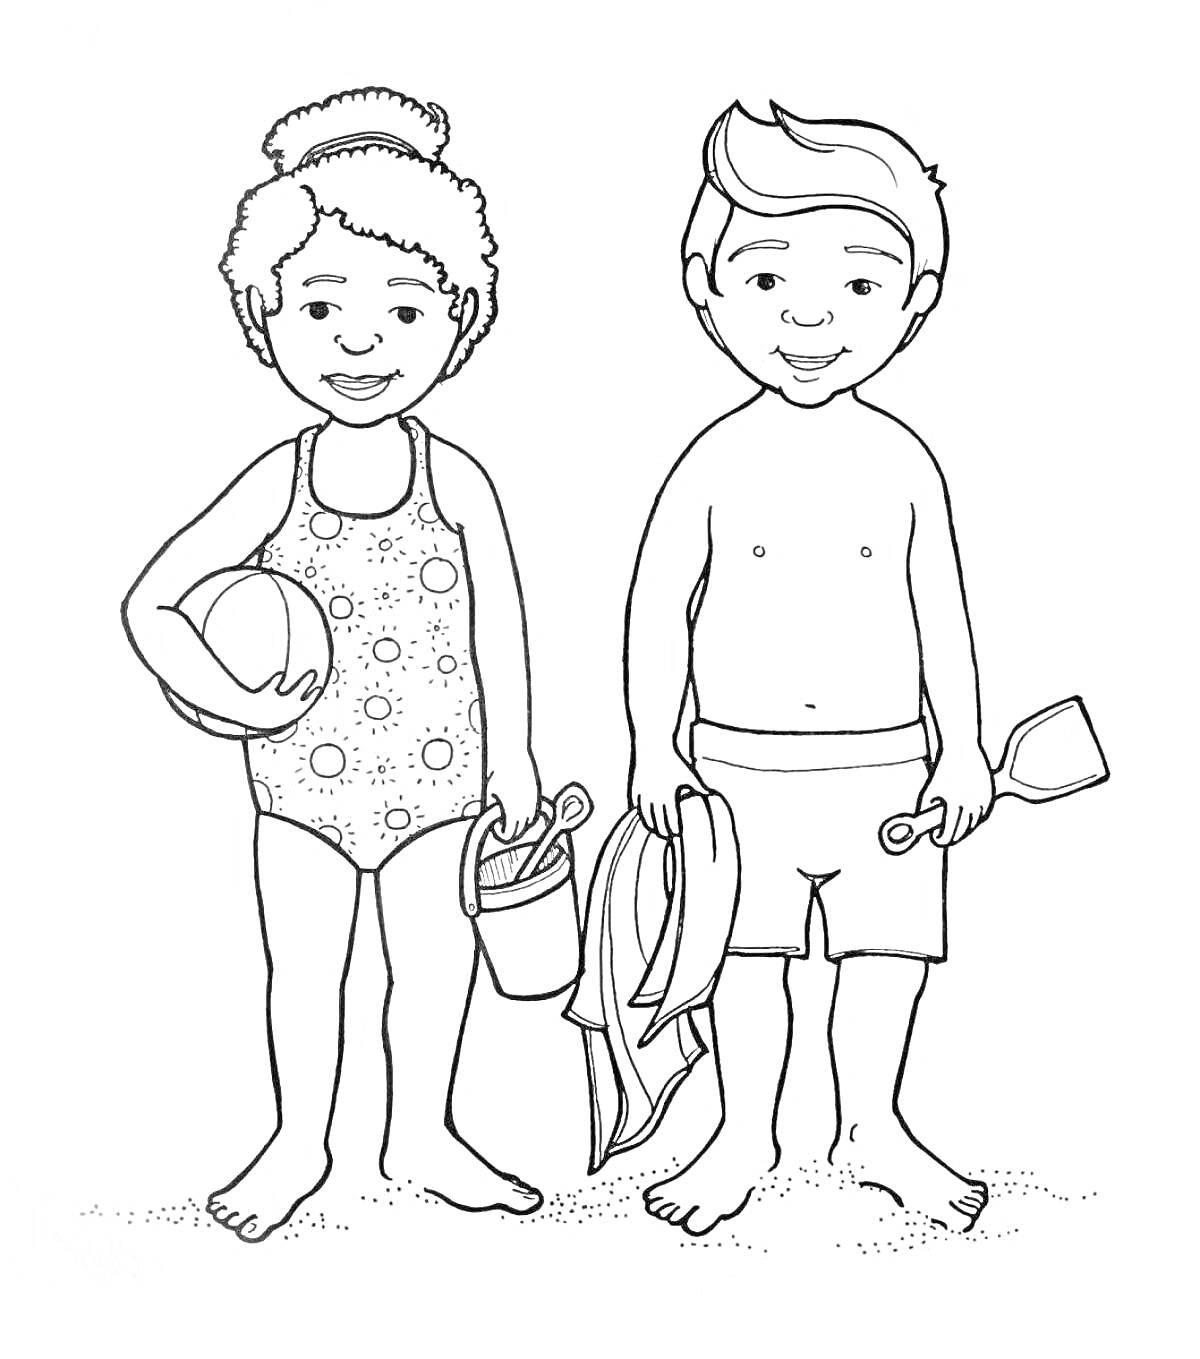 Раскраска Дети на пляже с пляжными принадлежностями: девочка в купальнике с мячом и ведром, мальчик в плавках с ластами и лопатками